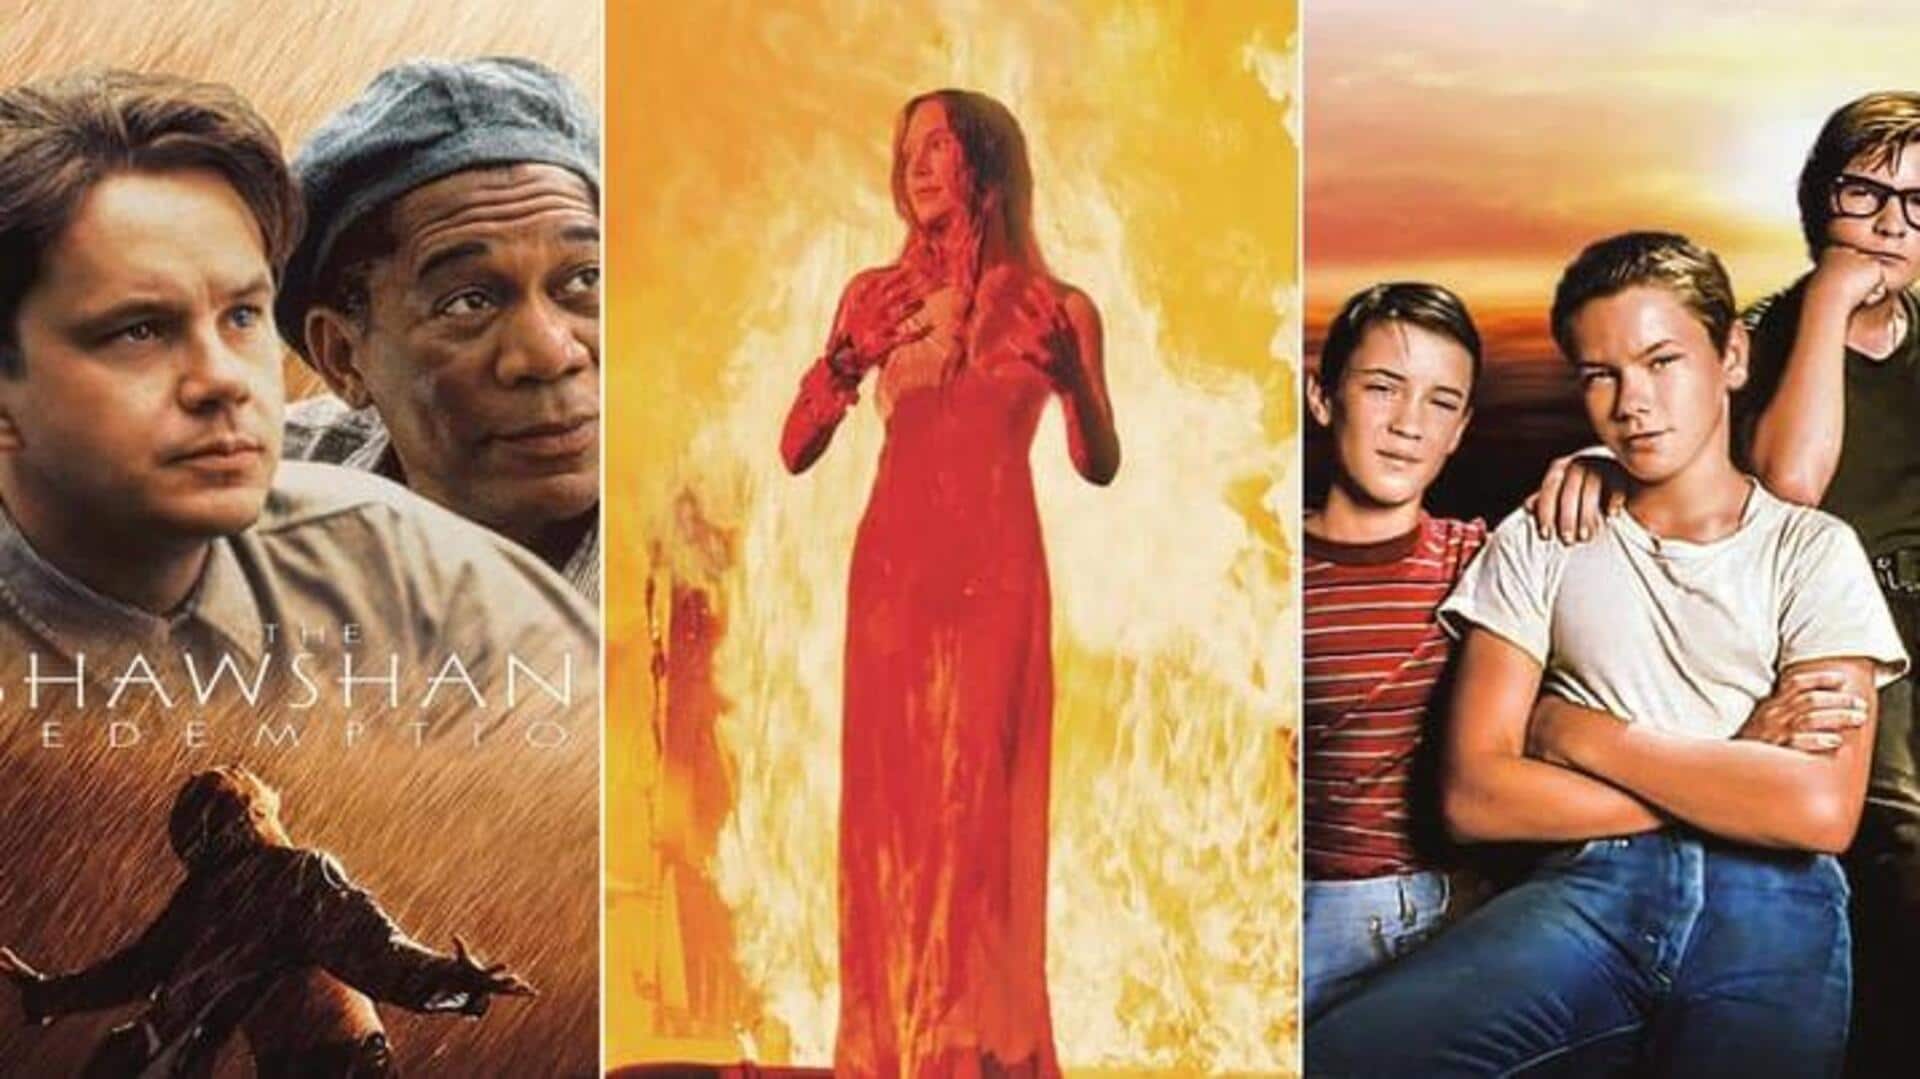 "Carrie," "The Shawshank Redemption": Adaptasi Hollywood Dari Buku Stephen King 